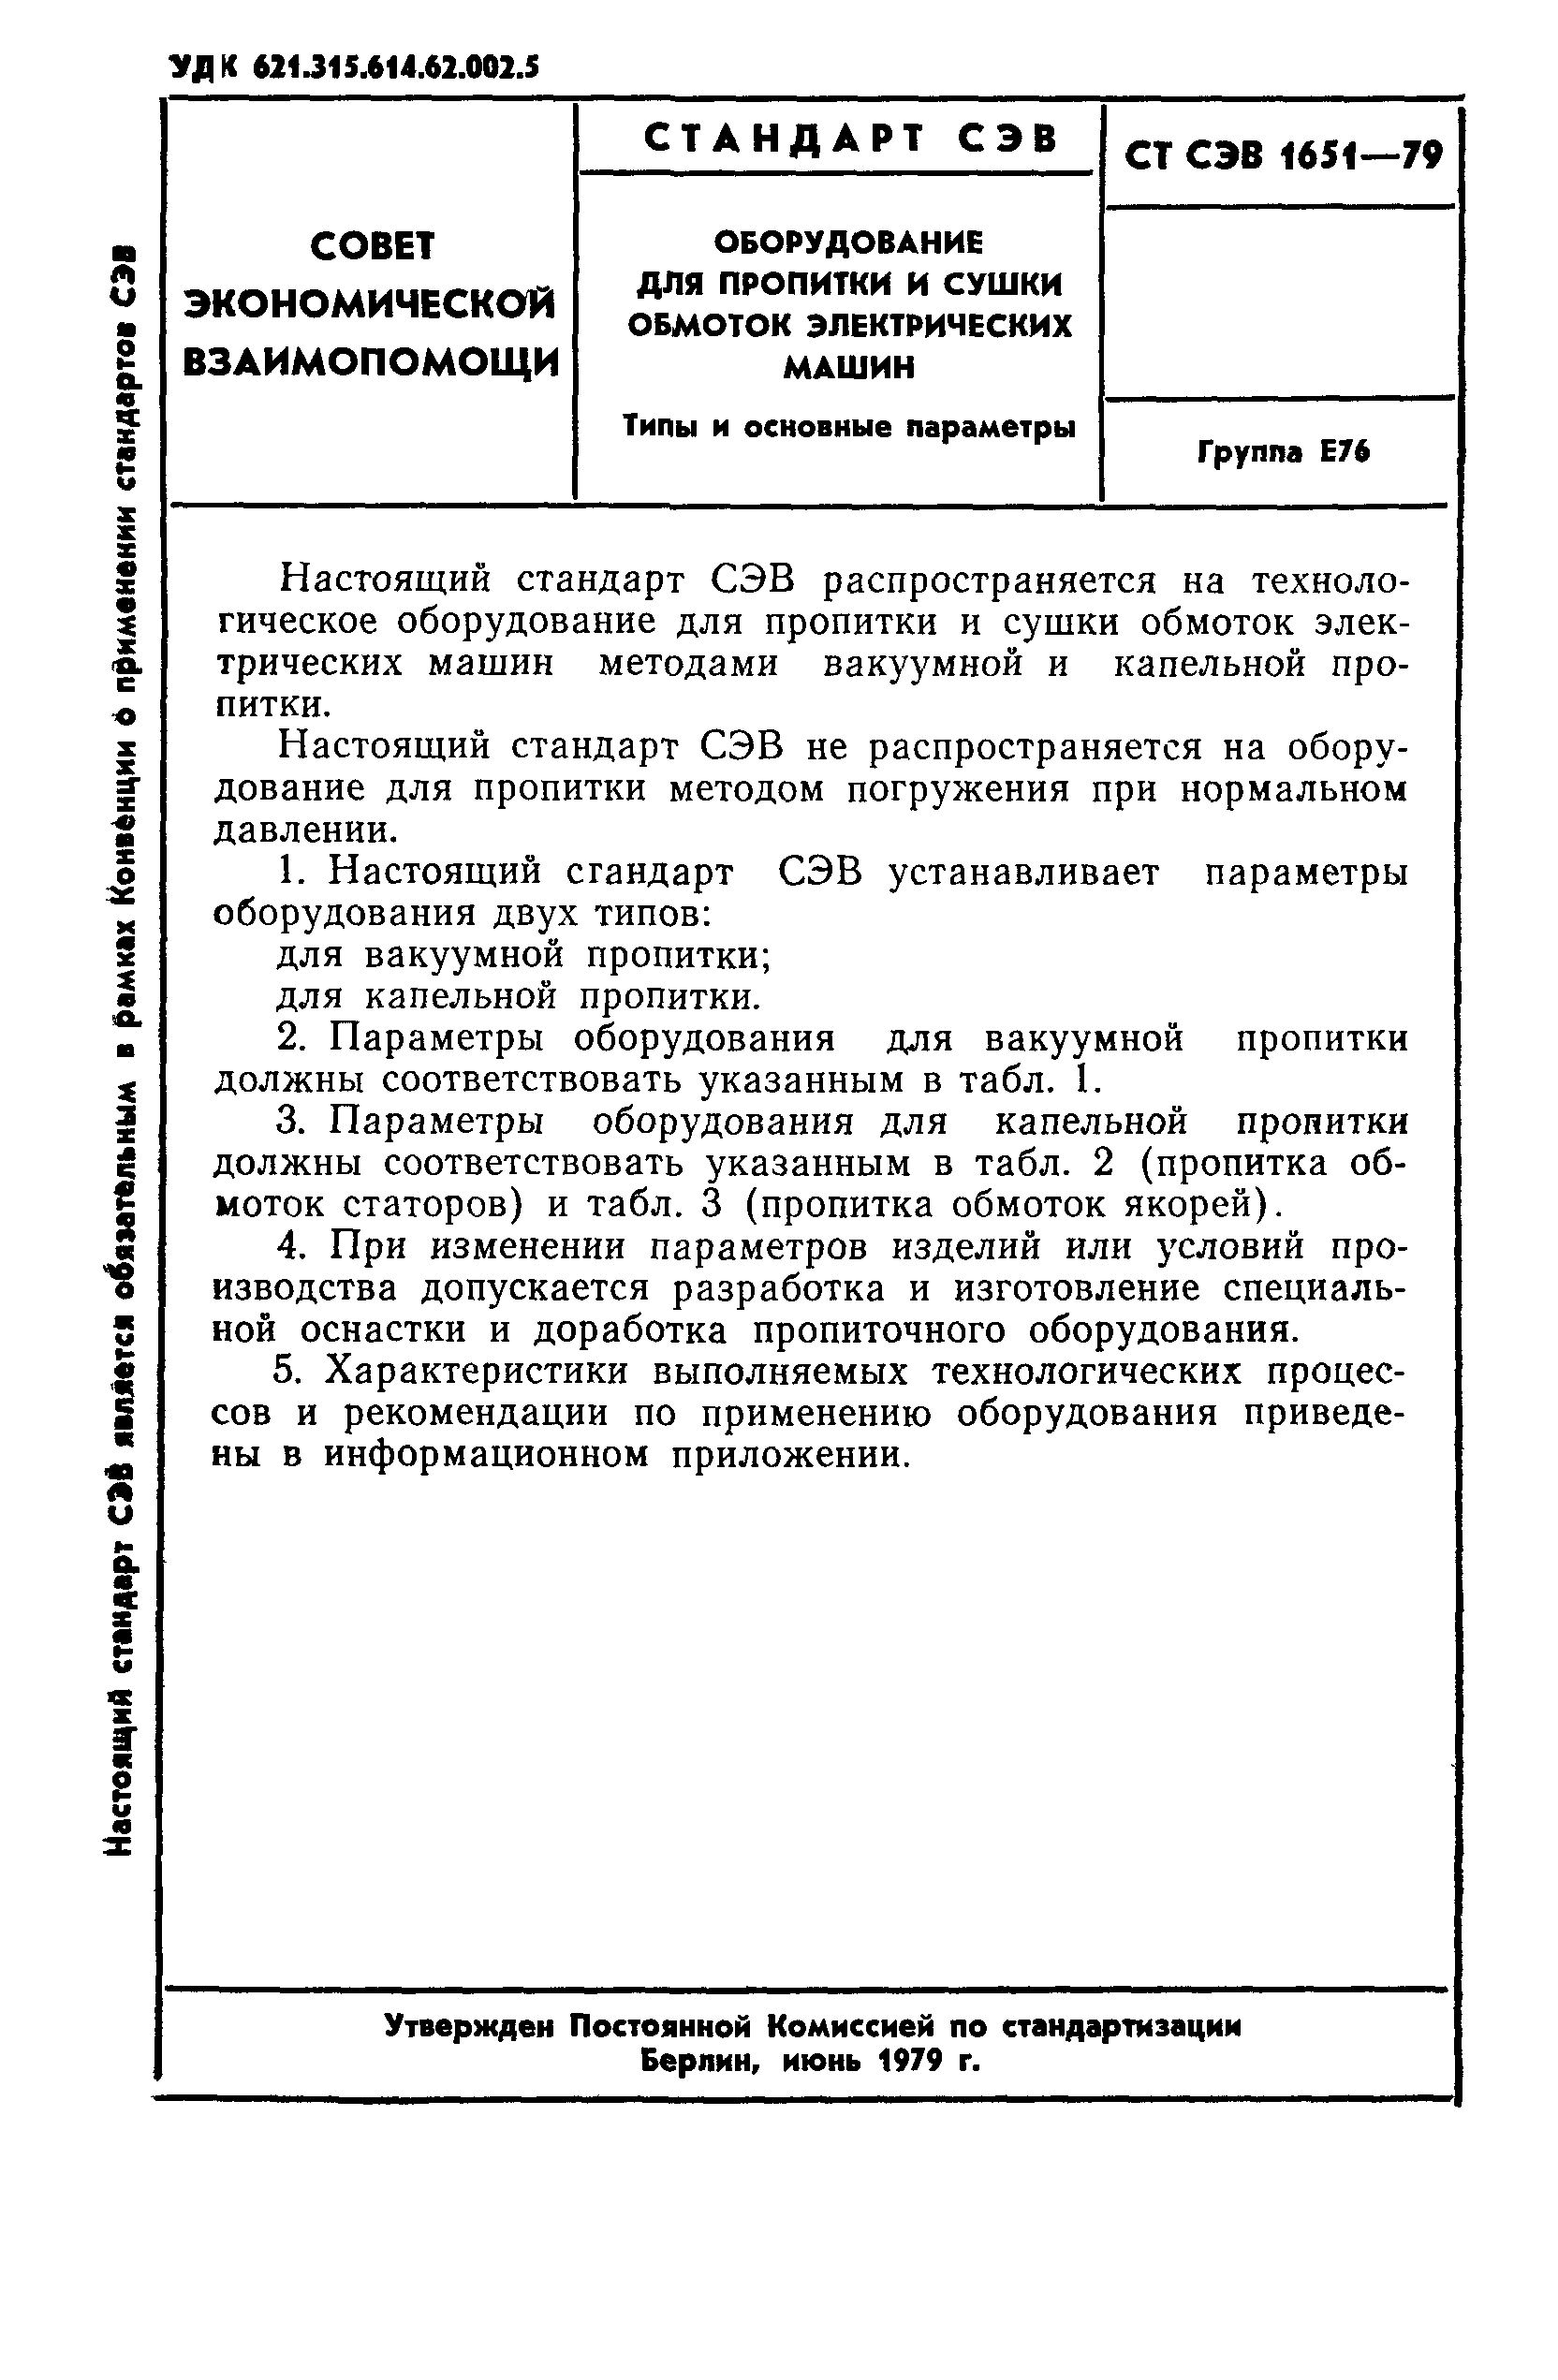 СТ СЭВ 1651-79